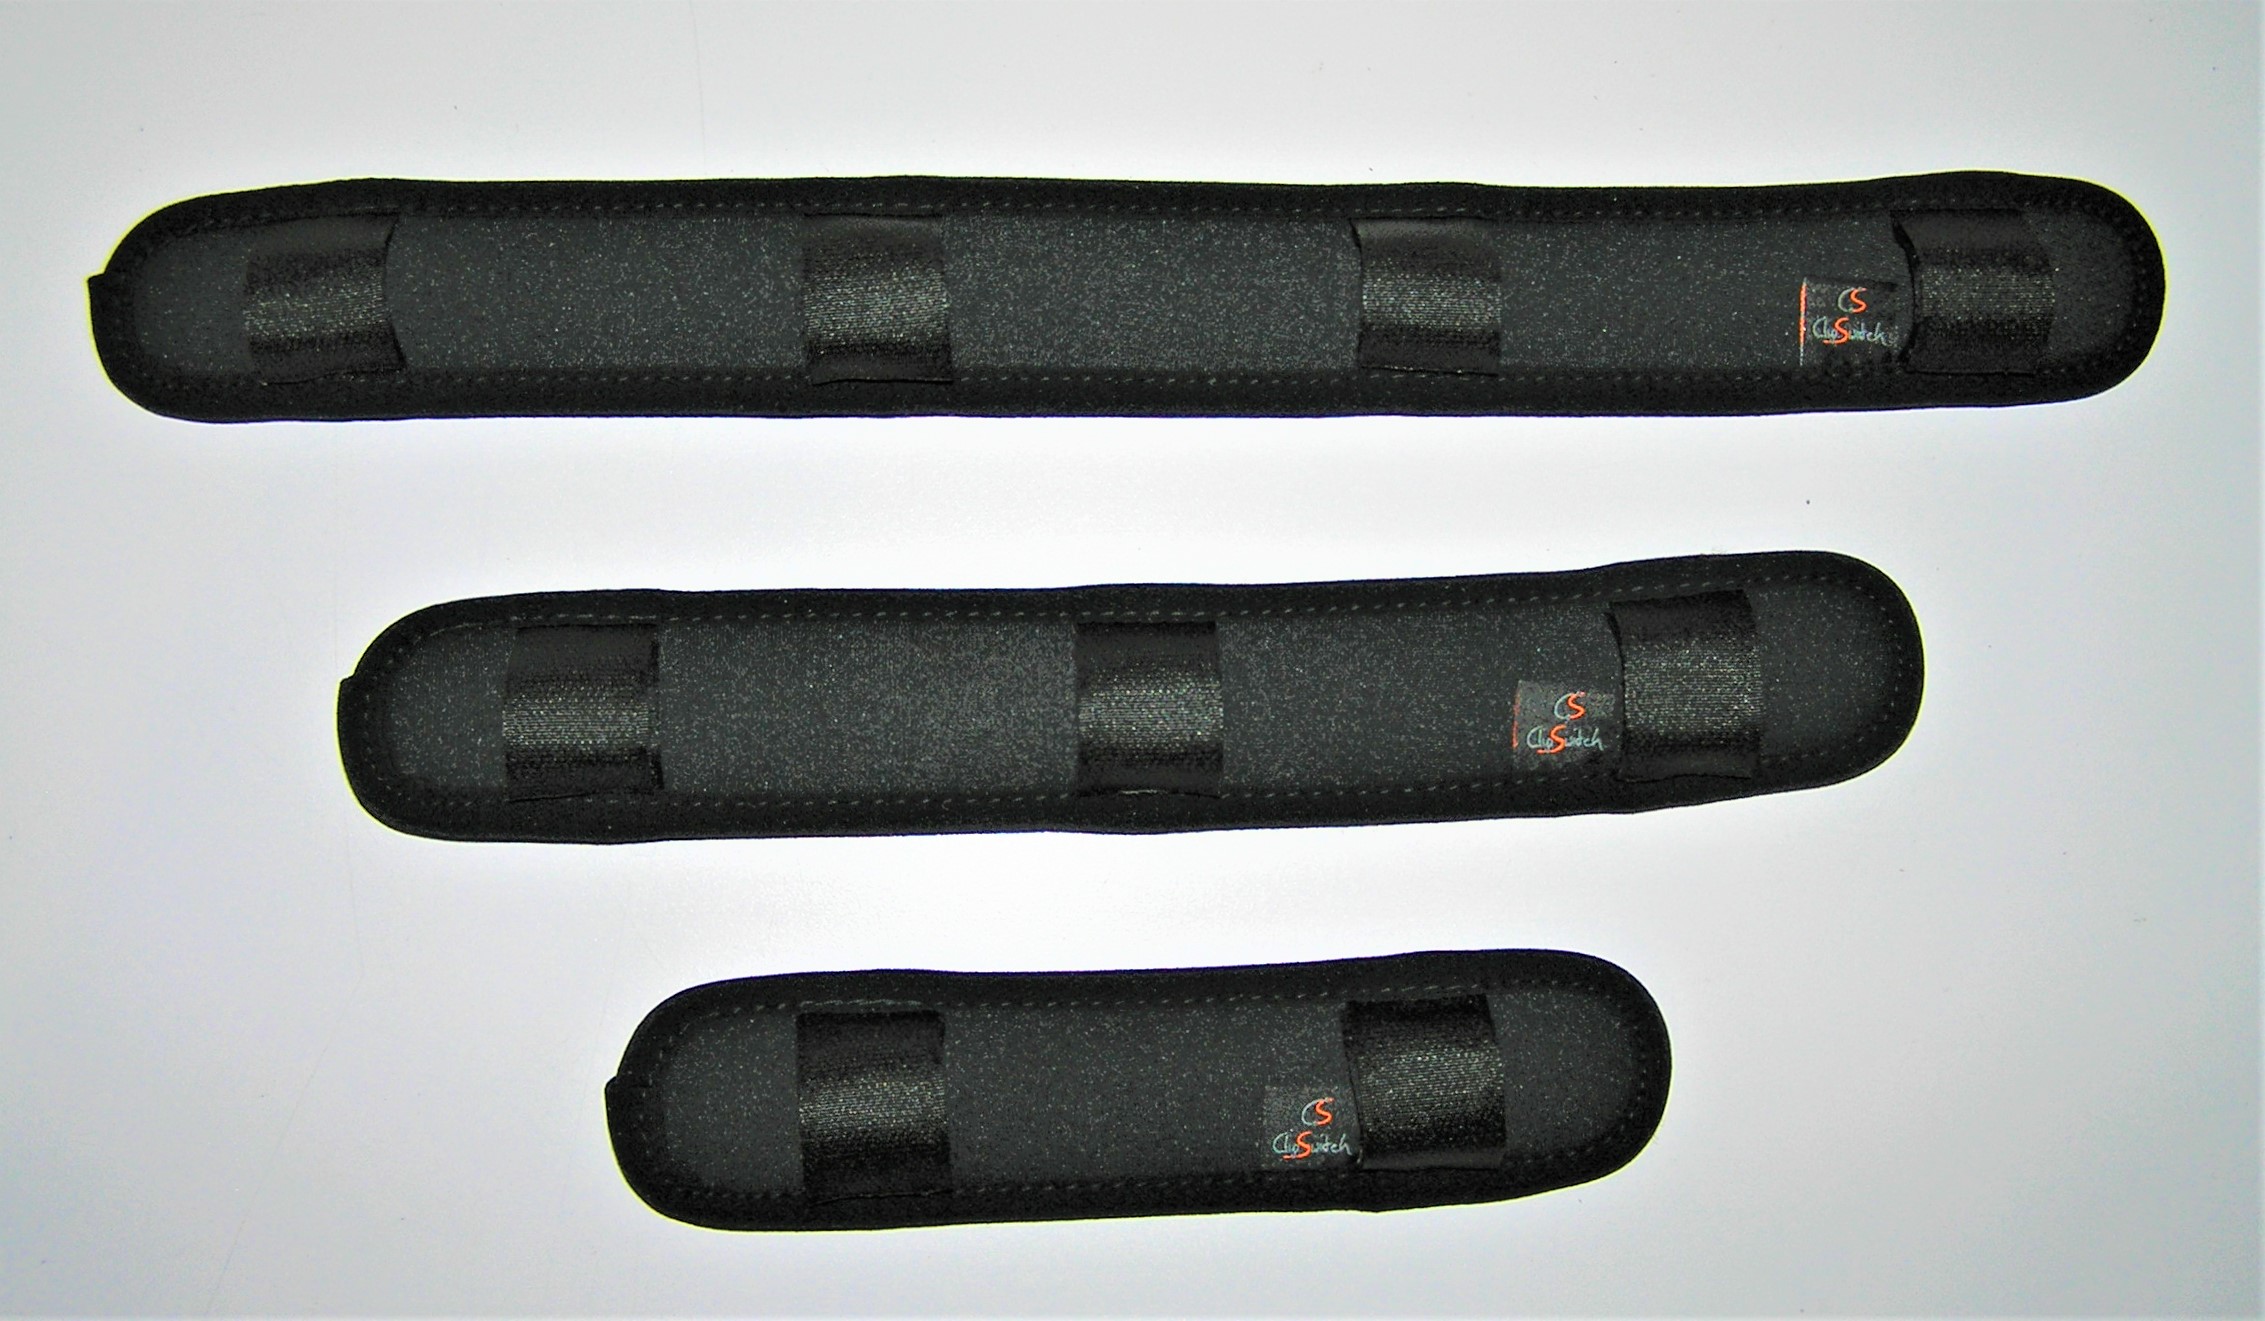 Gurtpolster fürs Auto, 2 Pack, in schwarz, aus weicher Microfaser, mit  Klettband Verschluss, für Kinder und Erwachsene, 24 cm Länge,  Schulterpolster